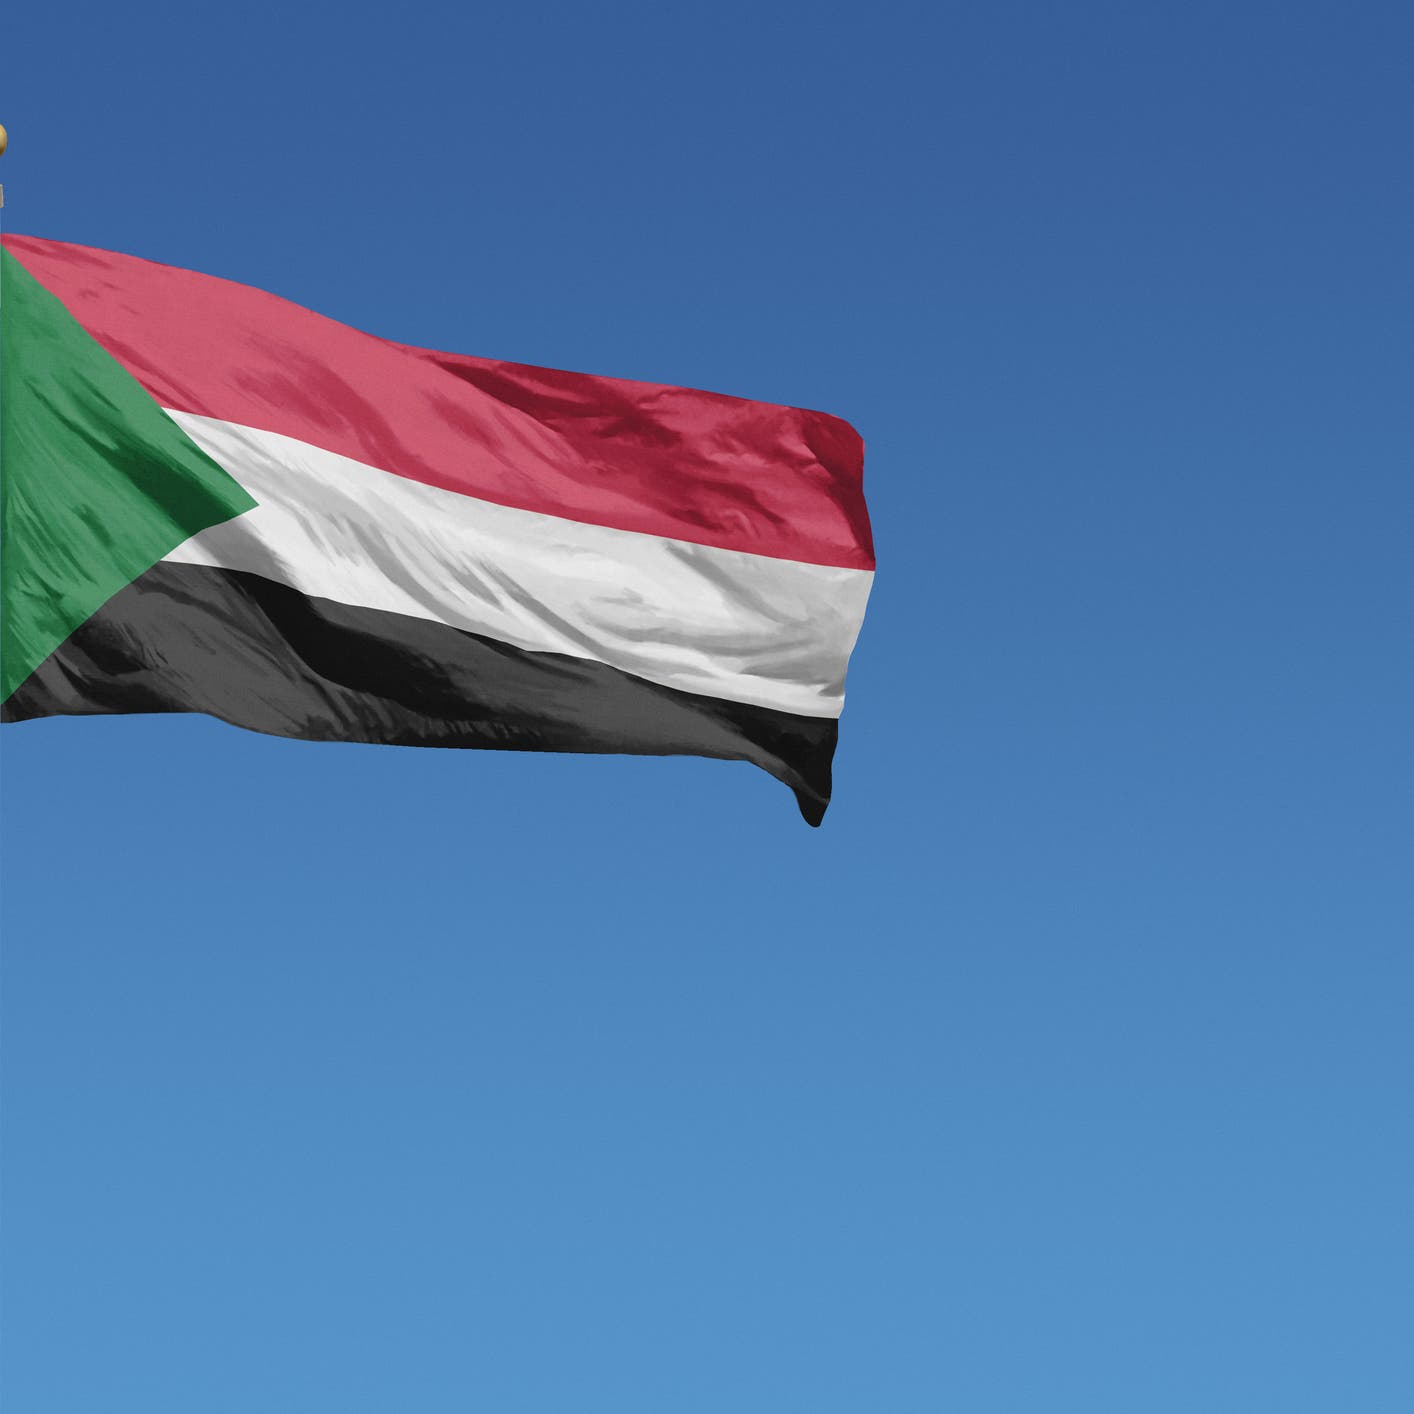 الاتحاد الإفريقي: السلمية هي مفتاح الحل لأزمة السودان